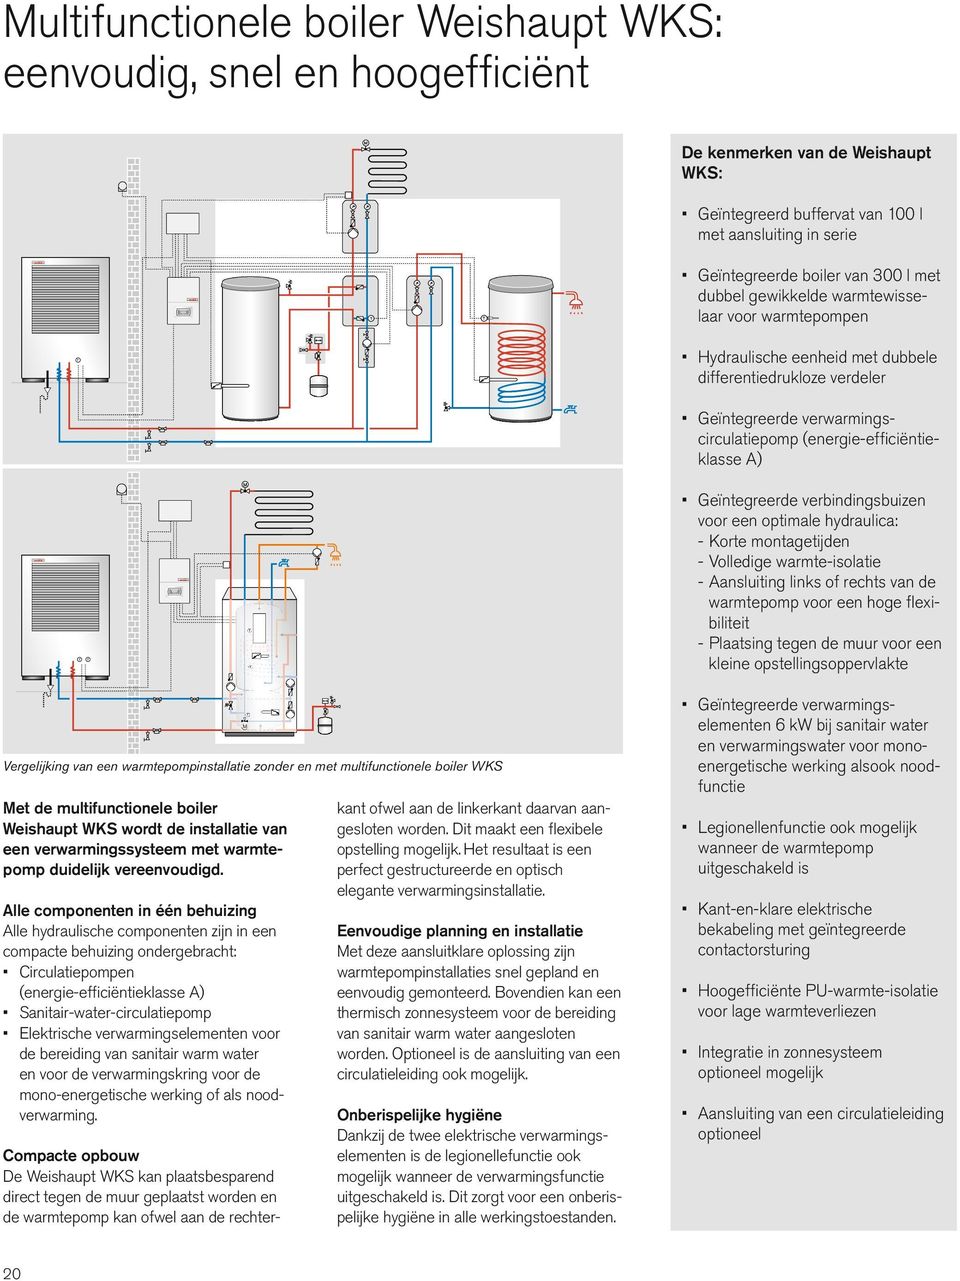 (energie-efficiëntieklasse A) Geïntegreerde verbindingsbuizen voor een optimale hydraulica: - Korte montagetijden - Volledige warmte-isolatie - Aansluiting links of rechts van de warmtepomp voor een